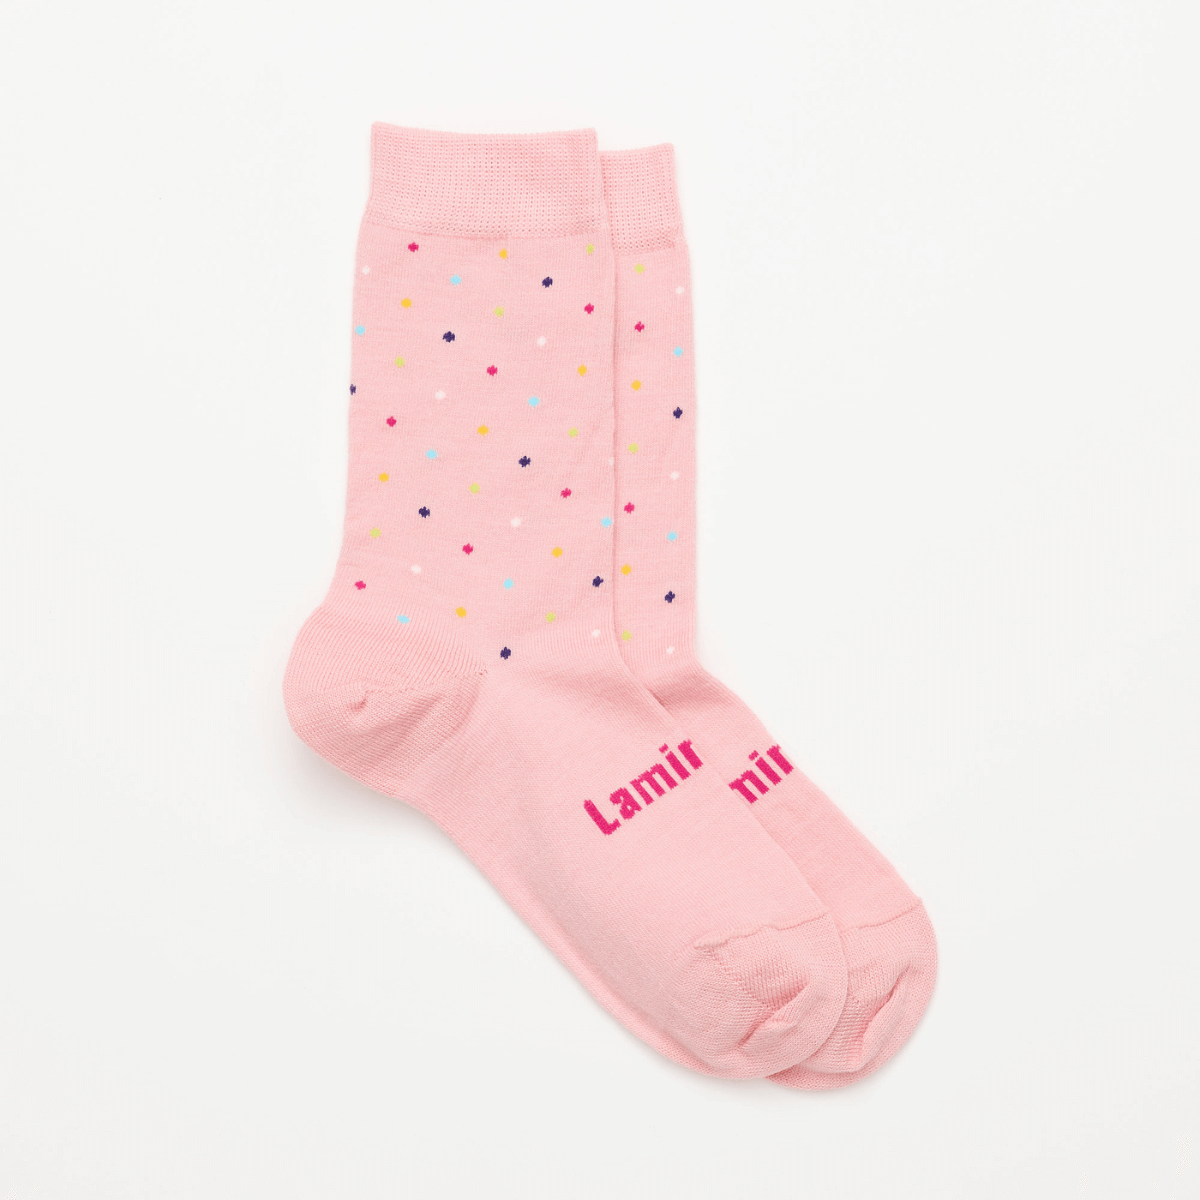 merino wool socks child australia pink